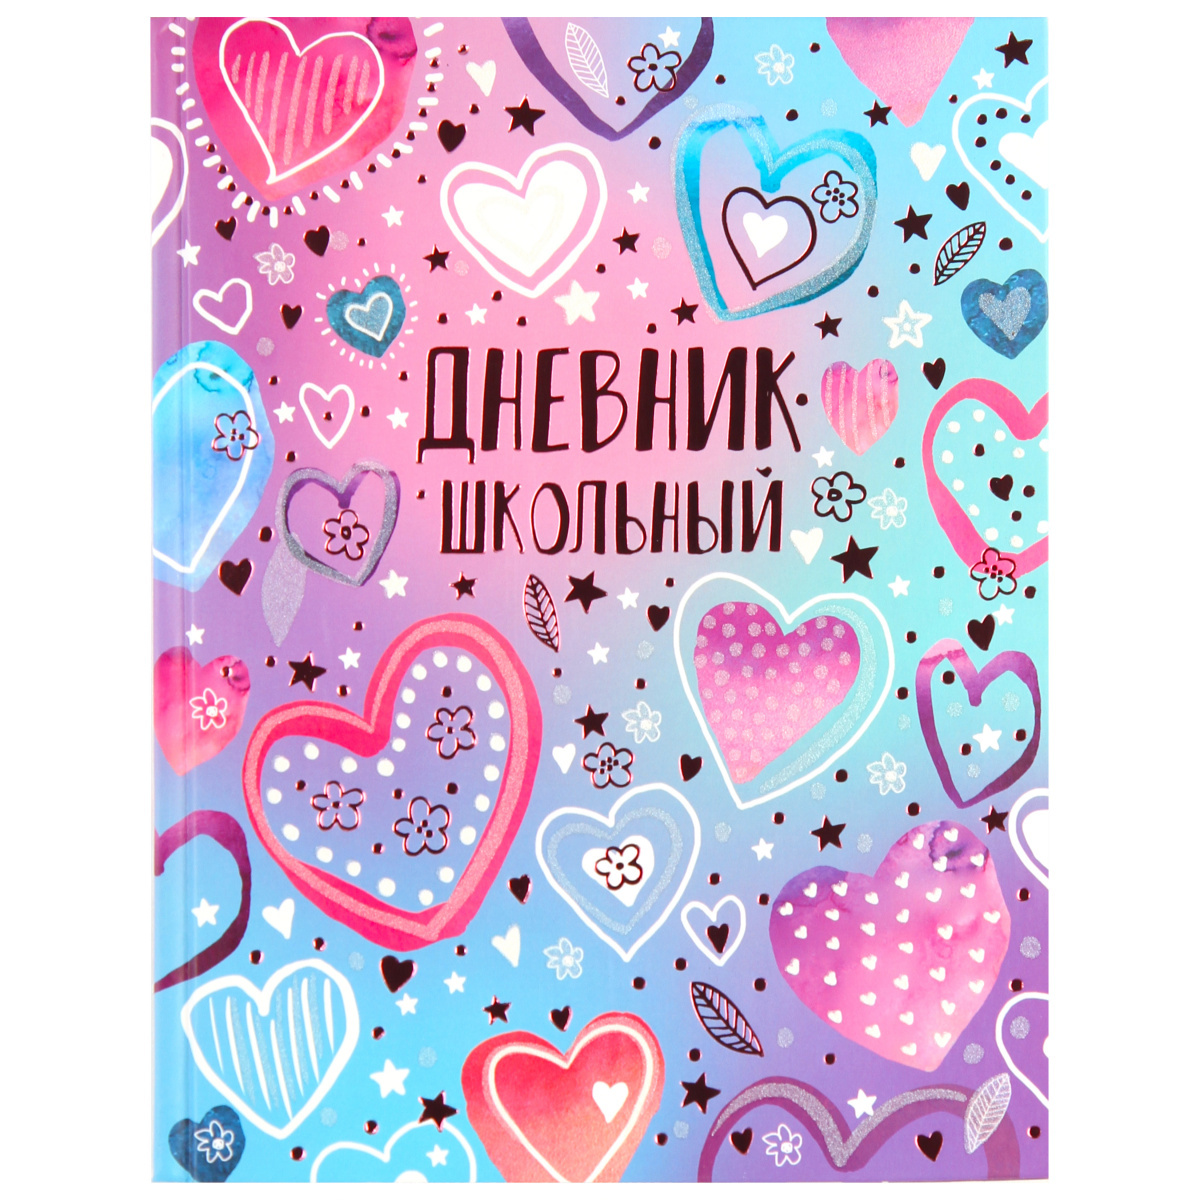 Дневник школьный 1-11 класс Сердечки арт.60260